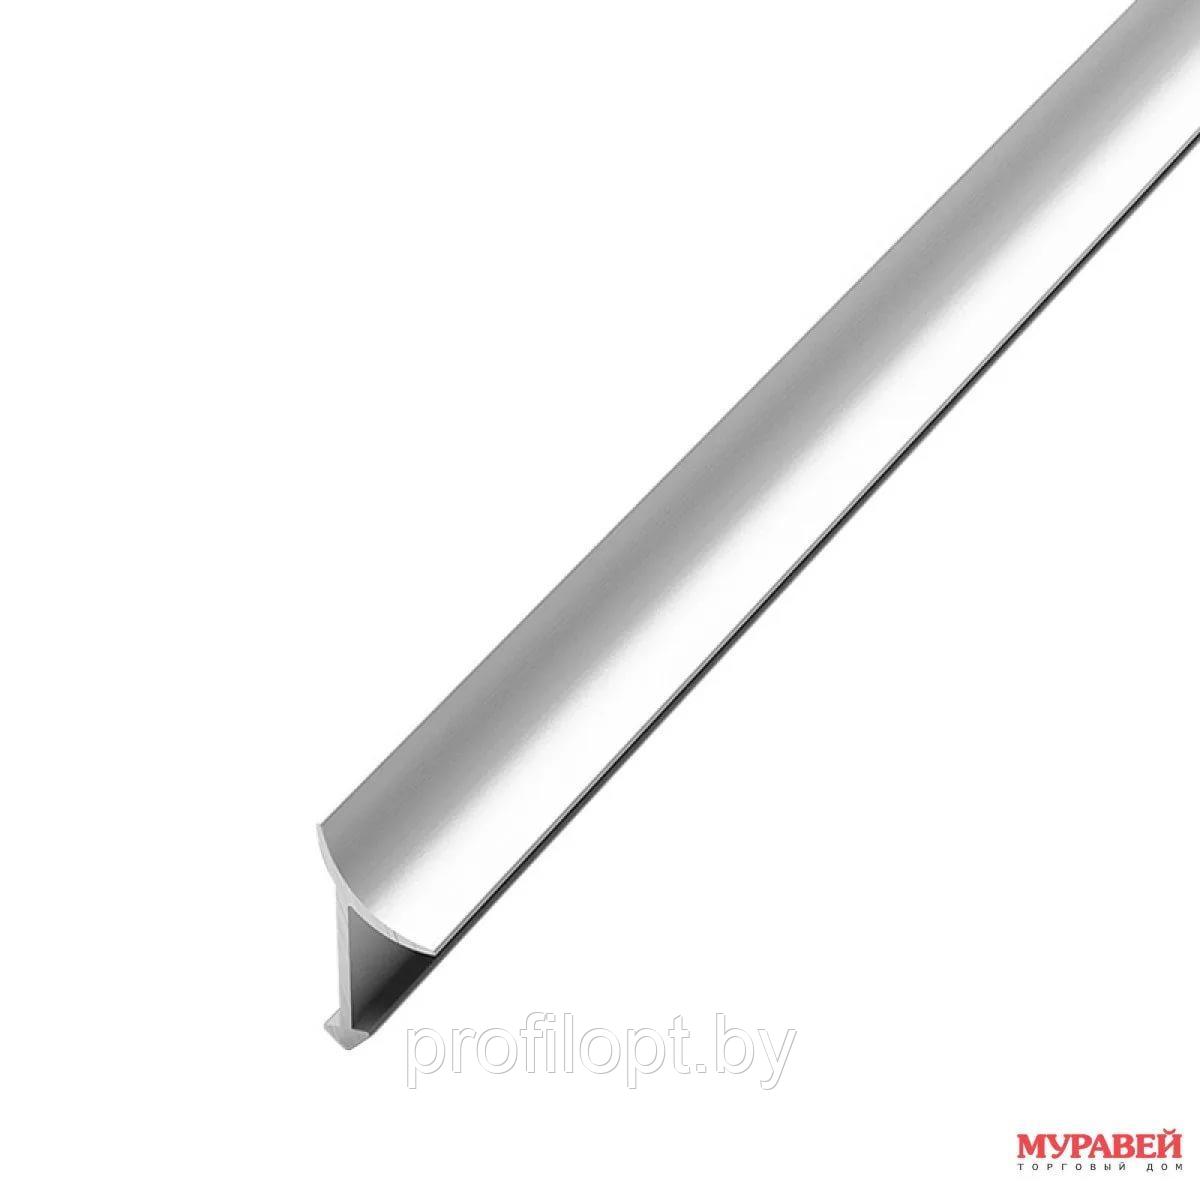 Угол для плитки внутренний универсальный алюминиевый, анодированный серебро 270 см